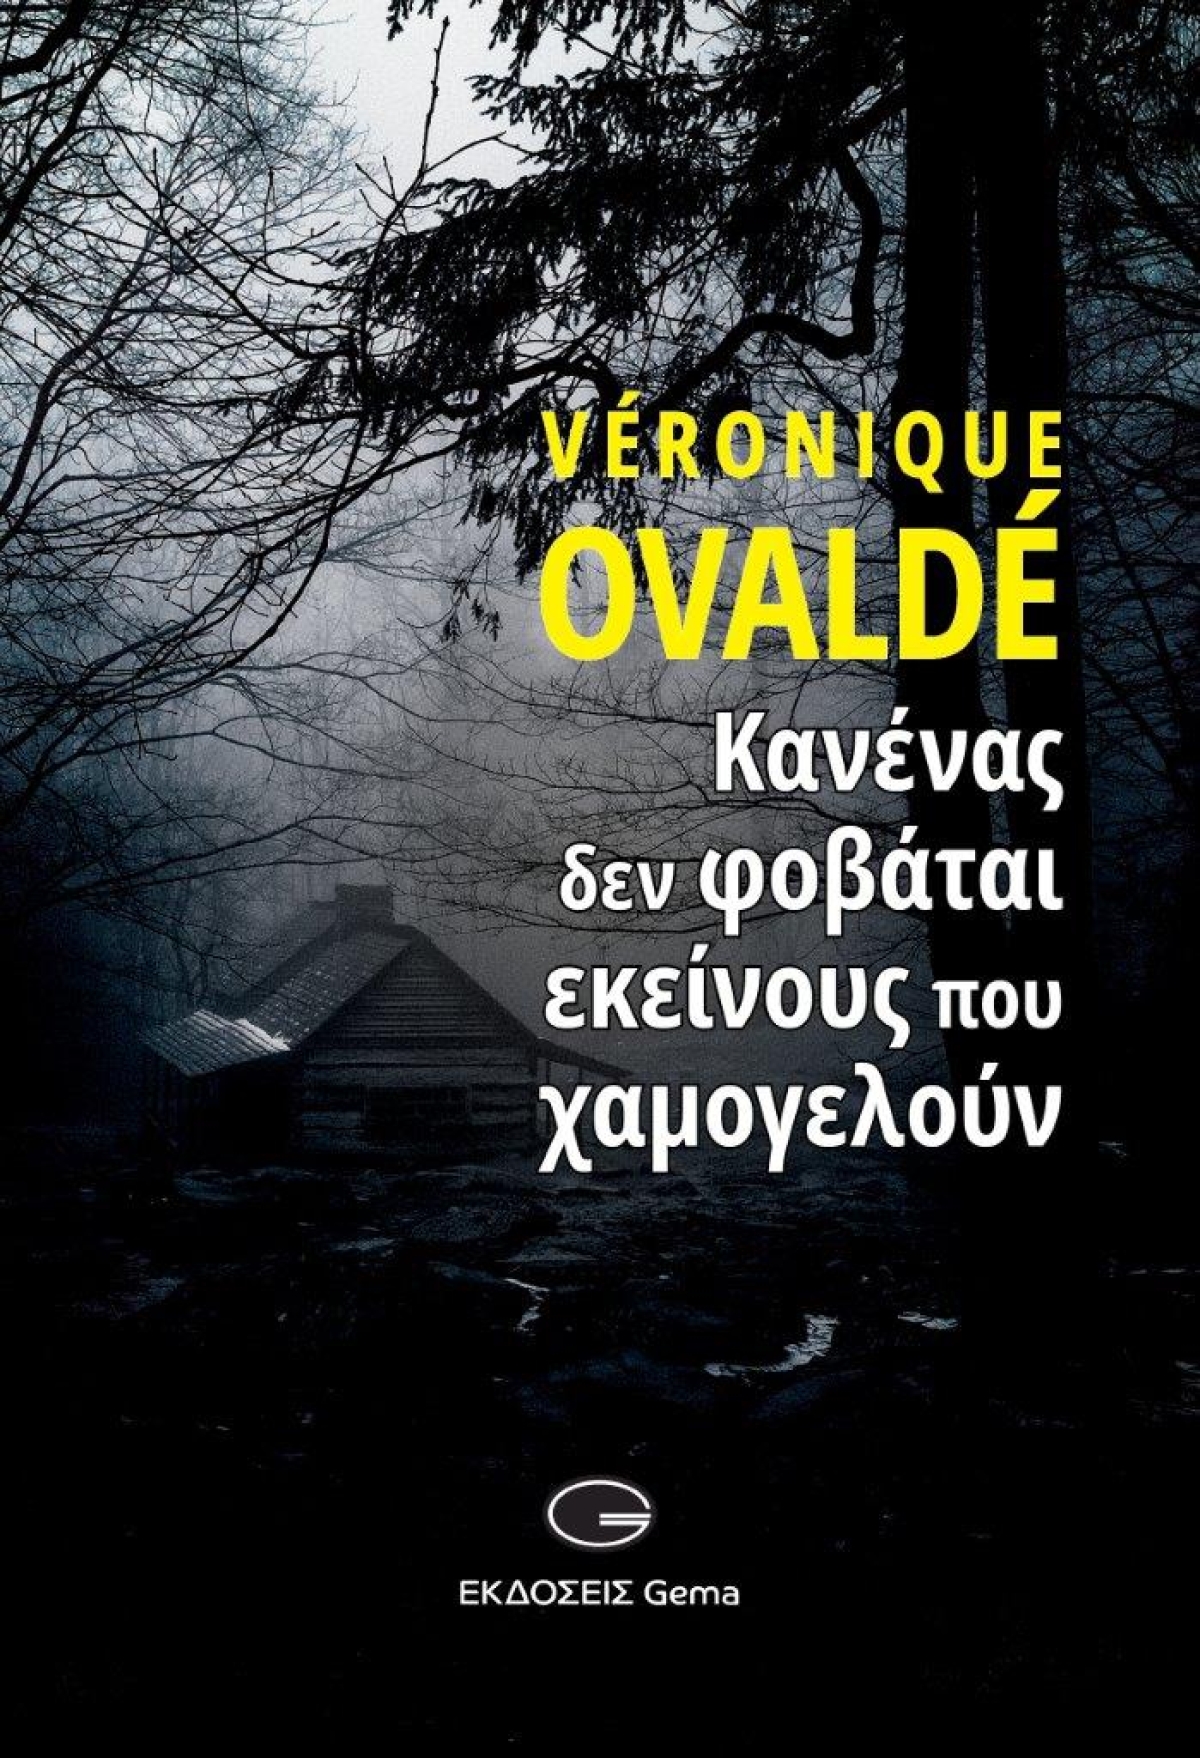 Κυκλοφόρησε από τις εκδόσεις GEMA το μυθιστόρημα της Veronique Ovalde &quot;Κανένας δεν φοβάται εκείνους που χαμογελούν&quot;